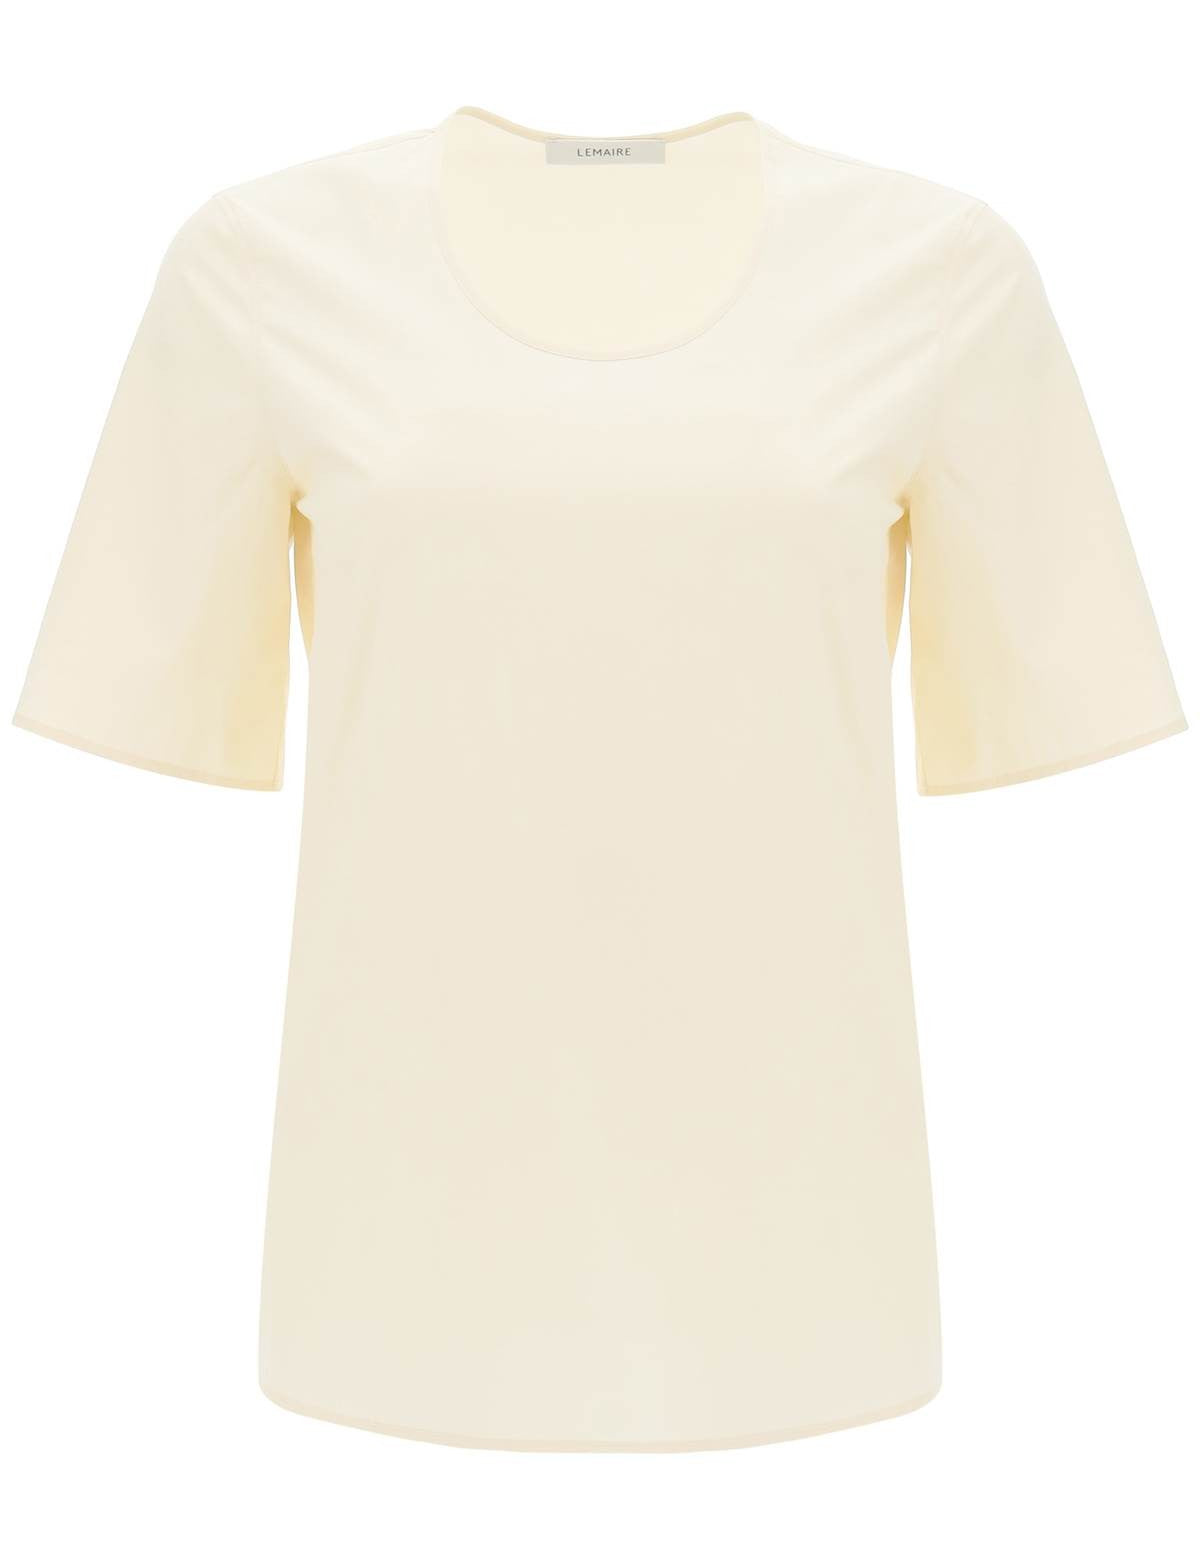 lemaire-cotton-t-shirt.jpg